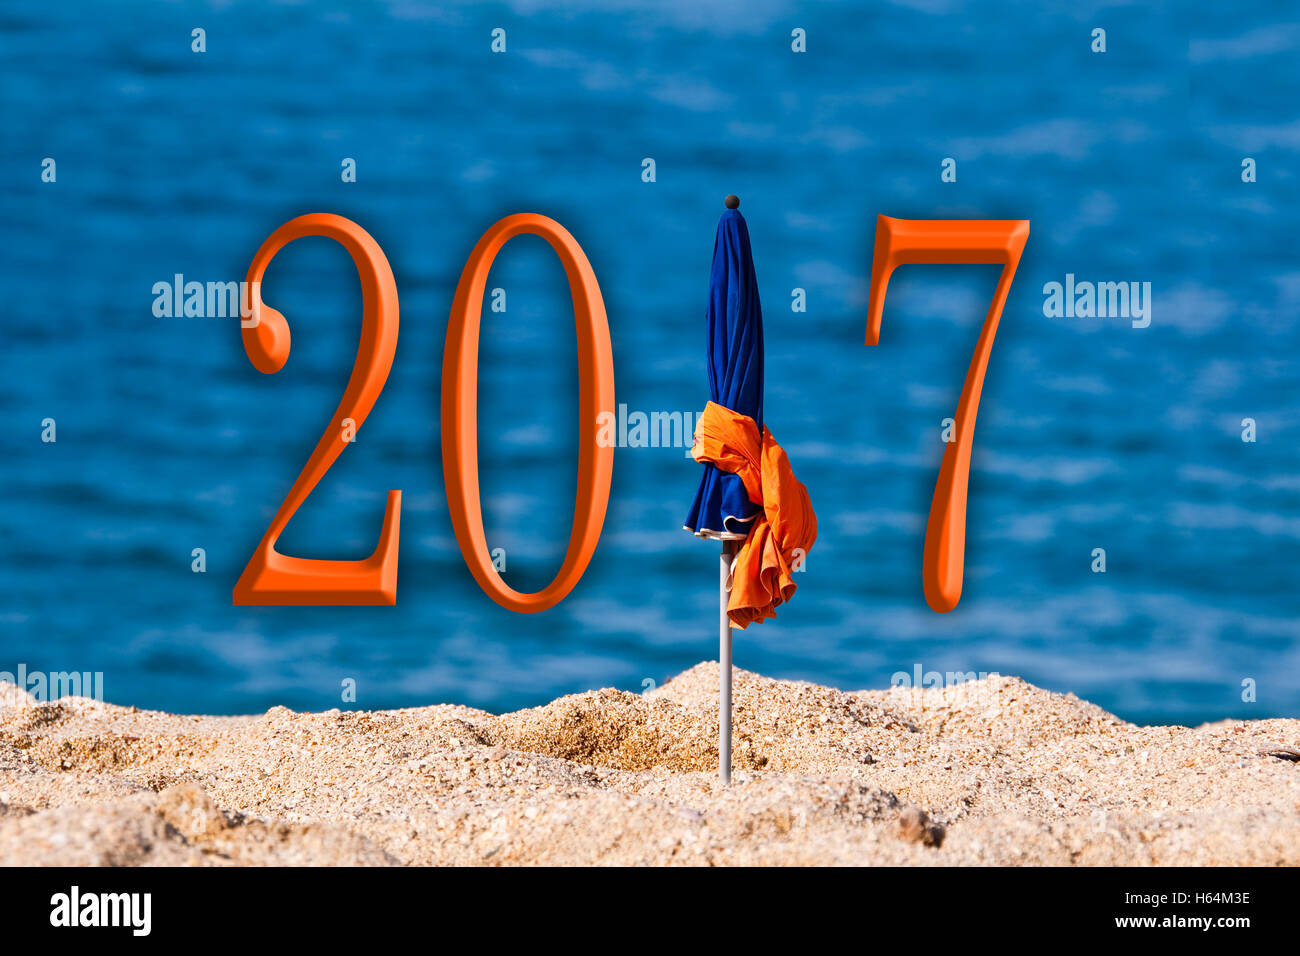 2017, parapluie de plage arrière-plan de la mer Banque D'Images